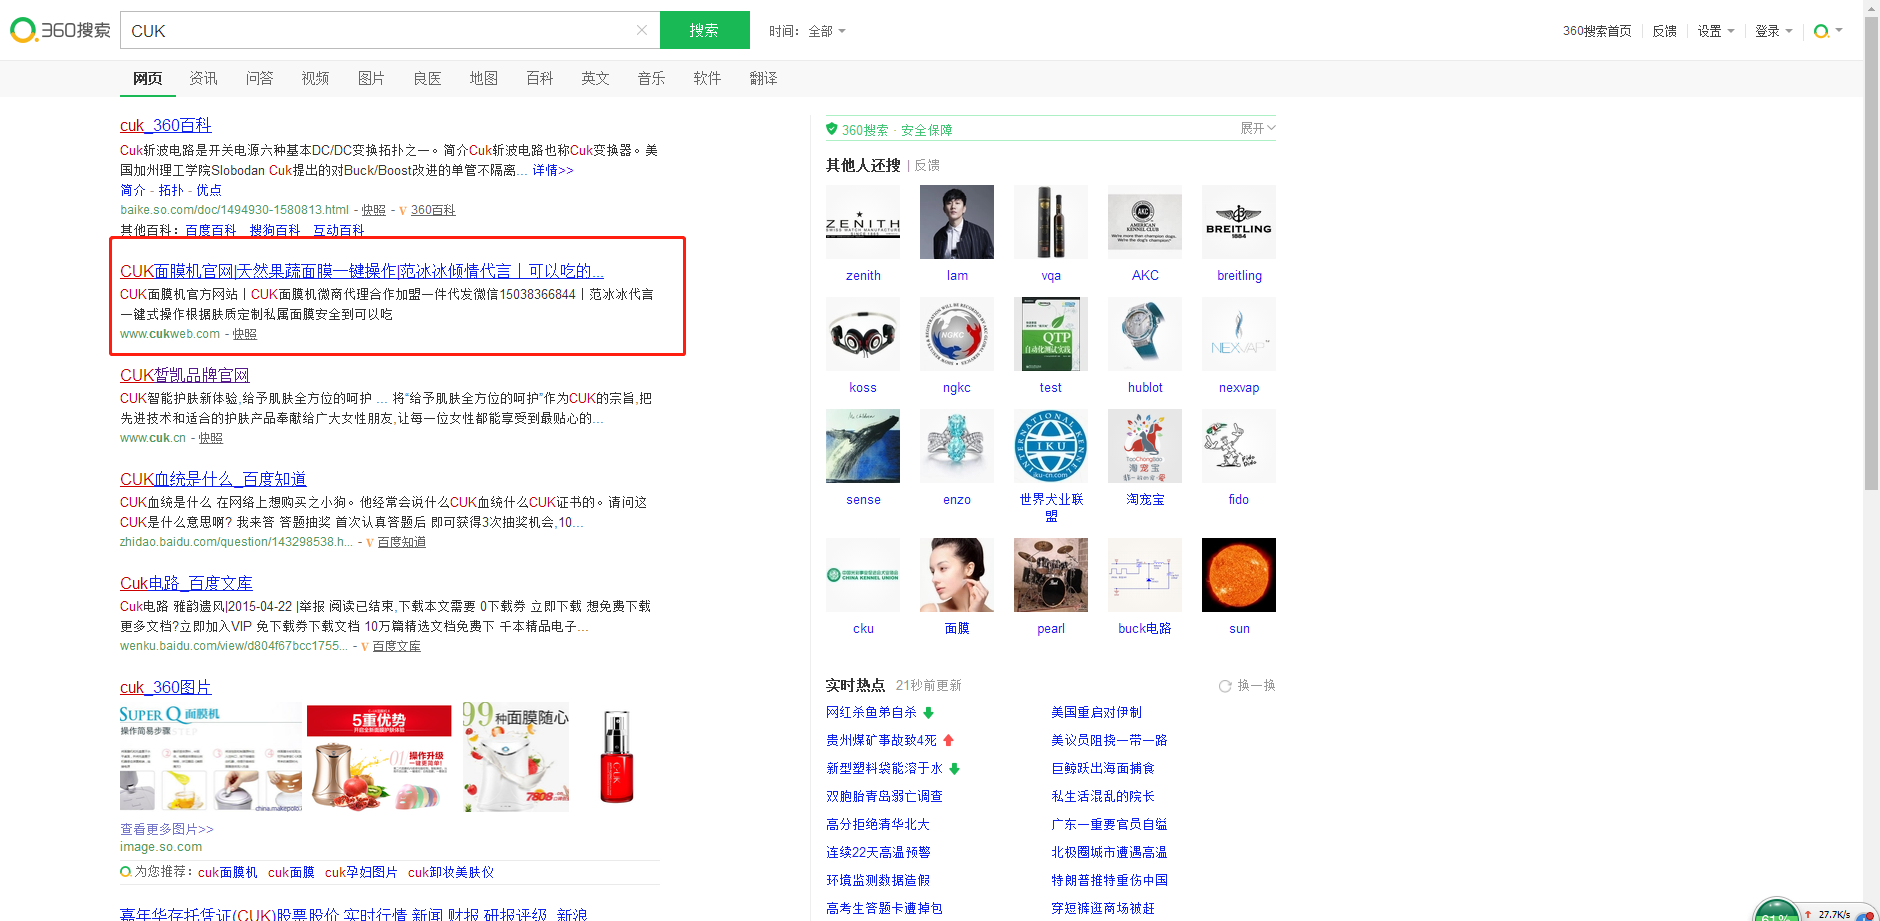 360搜索推广投诉,图中网站冒用我司商标品牌词